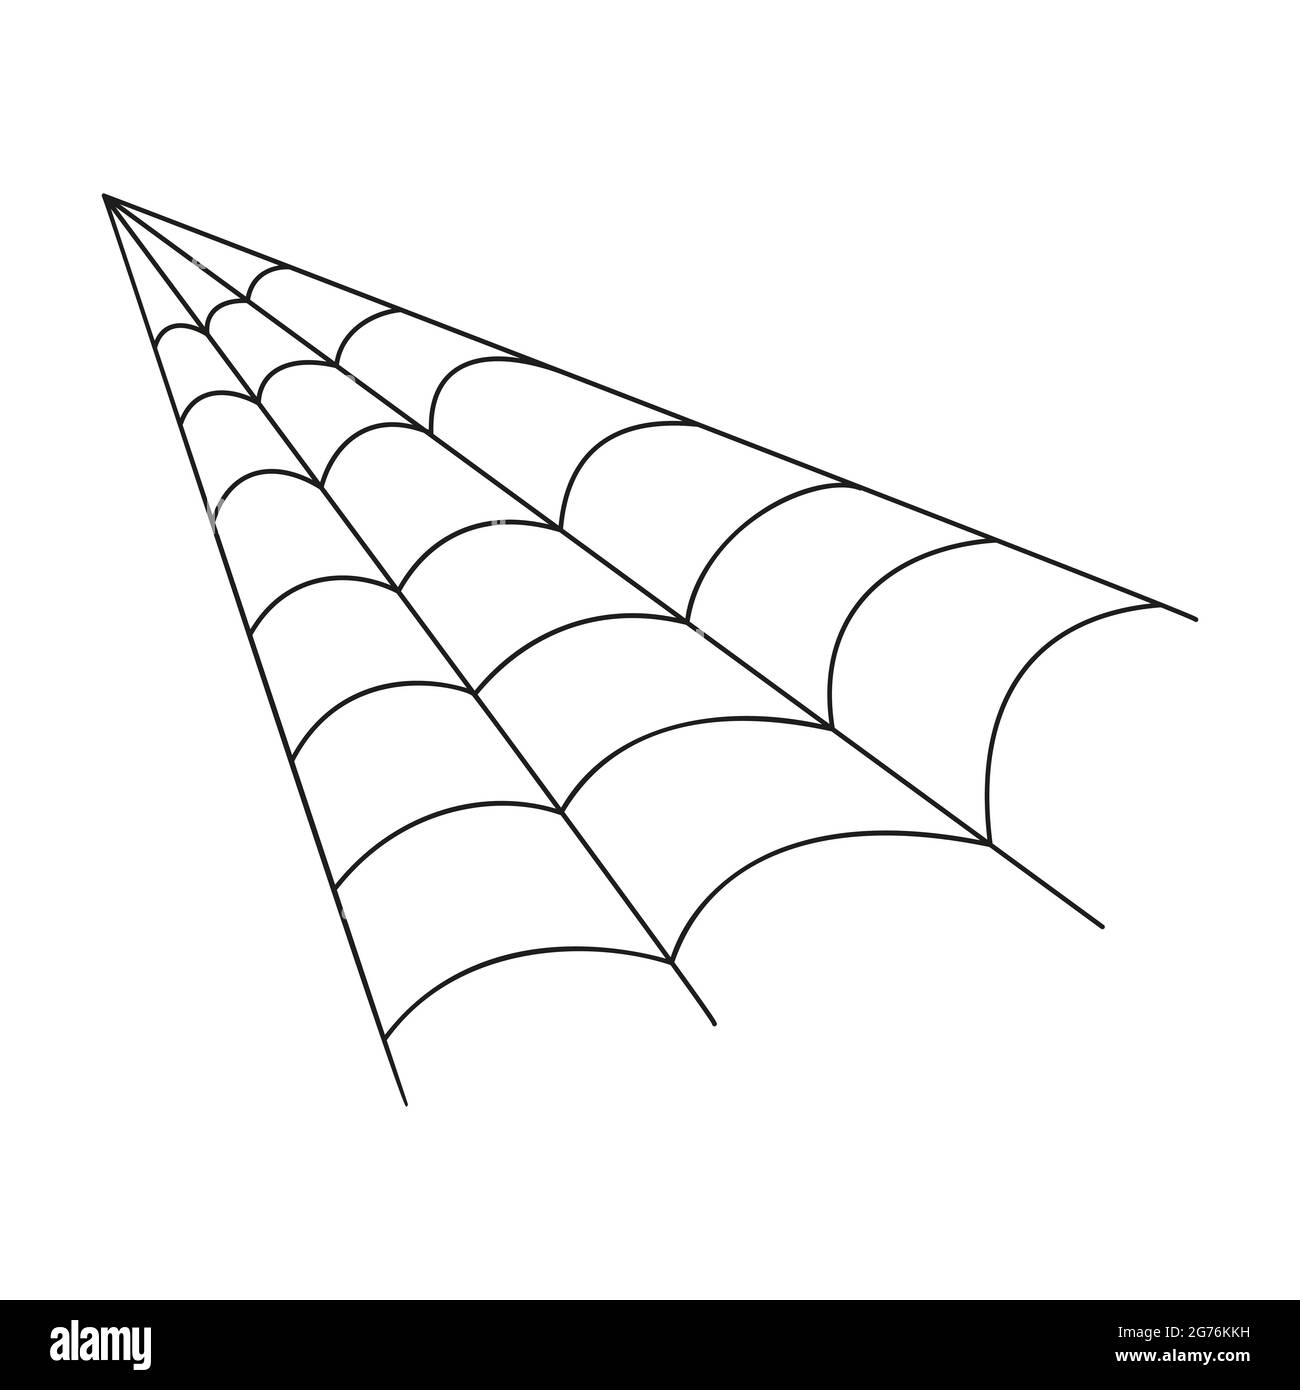 Cobweb in stile outline. Icona angolo web Spider isolata su sfondo bianco. Elemento di design per la decorazione della festa di Halloween. Illustrazione vettoriale. Illustrazione Vettoriale